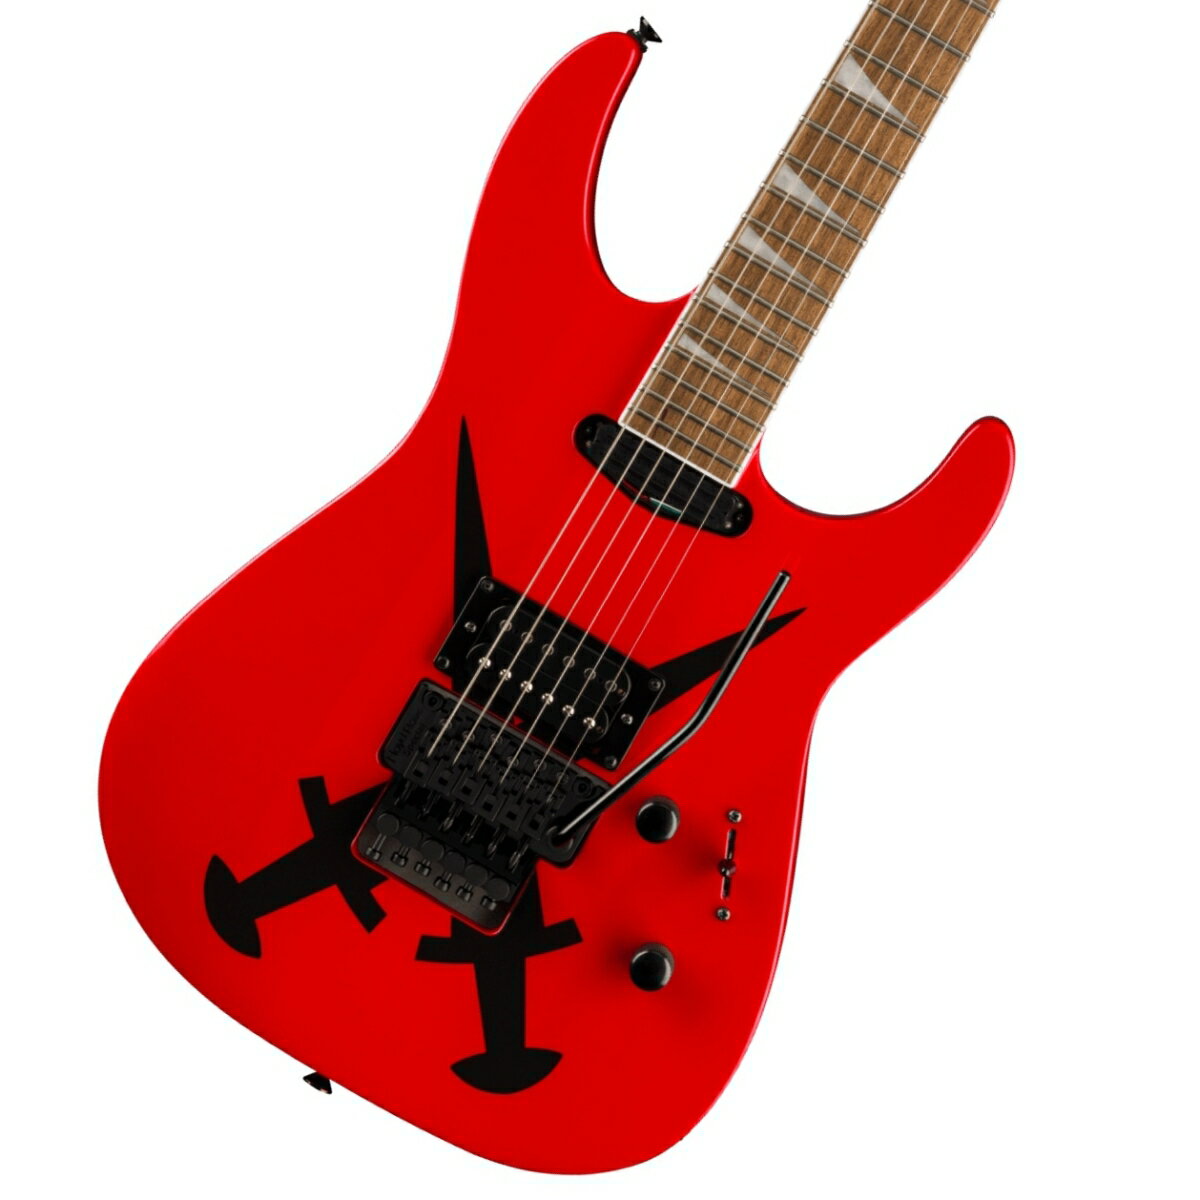 ジャクソンより双剣を冠した紅の六弦爆誕！ Jackson XシリーズSoloistモデルは速弾きに対応するパフォーマンスと快適さを兼ね備えた、お求めやすい価格帯の製品です。 Jackson X Series Soloist SL1A DXは、現代のスレッダーたちに求められる多彩な特徴を装備した、ダブルカッタウェイデザインのギターです。 ポプラボディが人間工学に基づいてデザインされ、スカーフジョイントと内蔵グラファイト補強ロッドを採用したメイプルスルーネックを備えています。 24本のジャンボフレットを配した12〜16インチコンパウンドラジアス仕様のバウンドローレル指板は、ナット部からハイポジションに向かうにつれて徐々にフラットになっていく形状が特徴で、ネック全長にわたりコード弾きからソロプレイまで、快適な演奏が可能です。 Jackson高出力ブリッジハムバッカーと、レールスタイルのネックピックアップはクランチ感のあるフルボディトーンを奏で、3ウェイブレードピックアップスイッチと1ボリューム、1トーンといったコントロール類により、アグレッッシブなリズムプレイからリードプレイまで対応する幅広いサウンドメイキングが可能です。Floyd Rose Specialダブルロッキングトレモロが、大胆なアーミングを行なってもチューニングの安定性を堅牢に維持します。 付属品：ソフトケース、トレモロアーム、メーカー保証書 ※画像はサンプルです。 製品仕様 Body Material Poplar Body Finish Gloss Neck Maple, Neck-Thru Neck Finish Gloss Color Matched Fingerboard Laurel, 12” to 16” Compound Radius &#40;304.8 mm to 406.4 mm&#41; Frets 24, Jumbo Position Inlays Pearloid Sharkfin Nut &#40;Material/Width&#41; Floyd Rose Special Locking, 1.6875” &#40;42.86 mm&#41; Tuning Machines Jackson Sealed Die-Cast Scale Length 25.5” &#40;64.77 cm&#41; Bridge Floyd Rose Special Double-Locking Tremolo &#40;Recessed&#41; Pickups Jackson High-Output Humbucking &#40;Bridge&#41; Jackson High-Output Mini Rail Humbucking &#40;Neck&#41; Pickup Switching 3-Position Blade Controls Volume, Tone Control Knobs Black Dome Style Hardware Finish Black Strings Nickel Plated Steel &#40;.009-.042 Gauges&#41; Case/Gig Bag Softcase